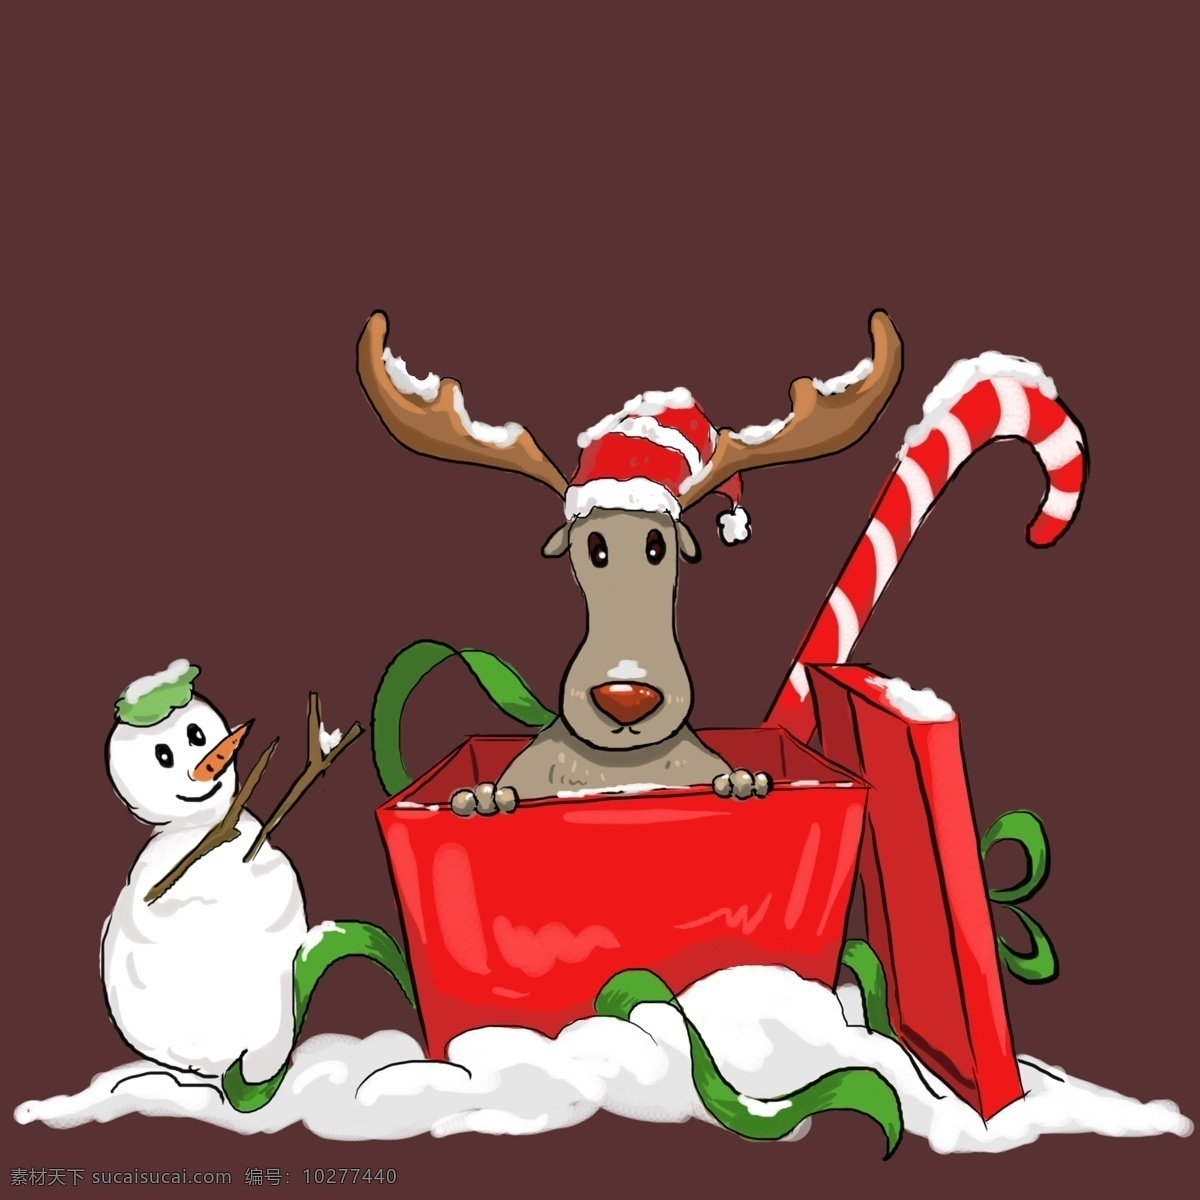 圣诞节 麋鹿 雪景 场景 元素 礼物盒 拐棍糖 圣诞帽 雪人 雪地